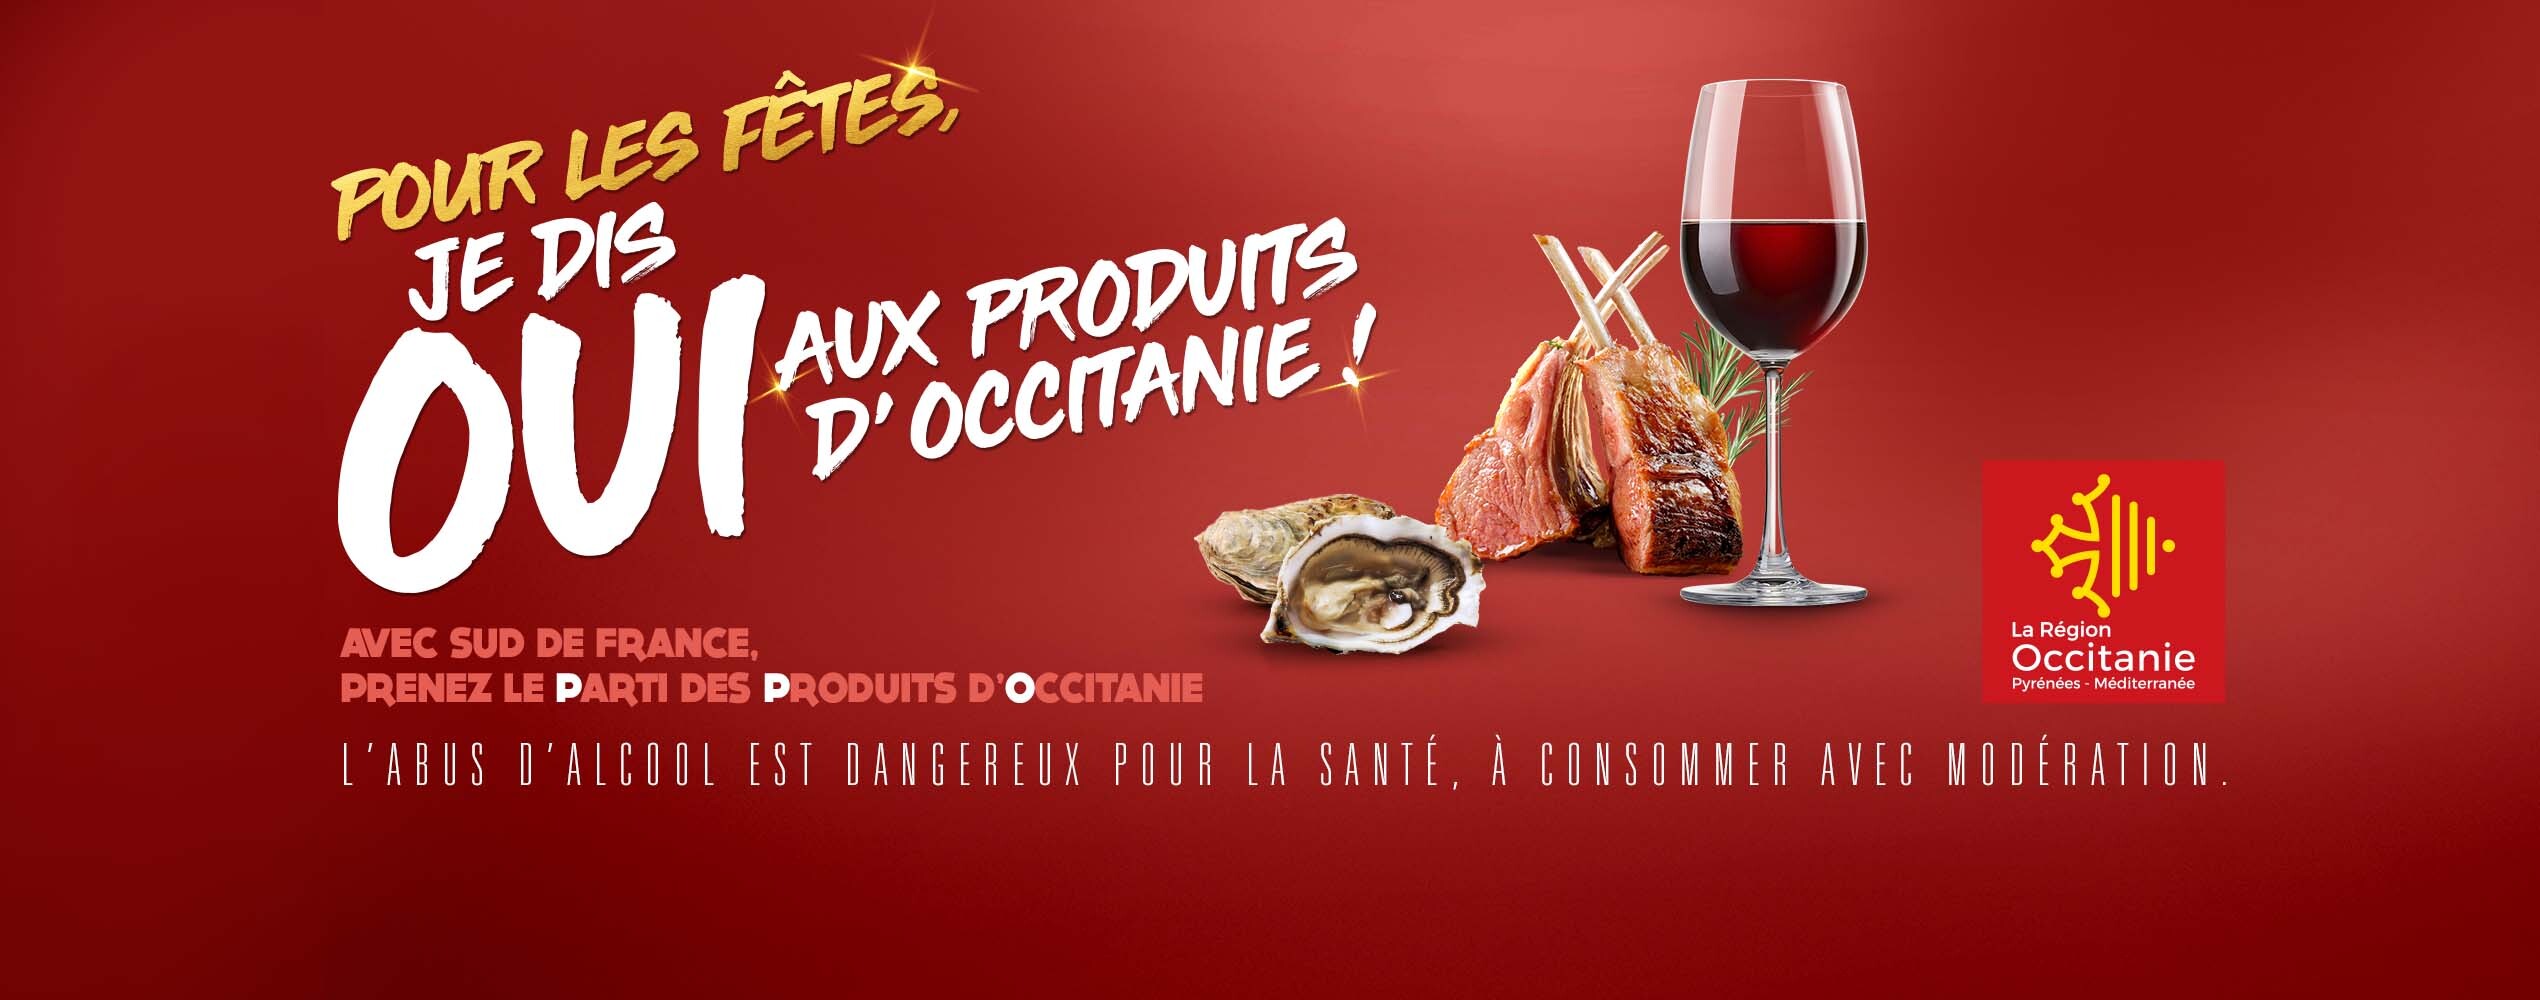 Pour les fêtes, je dis oui aux produits d’Occitanie !